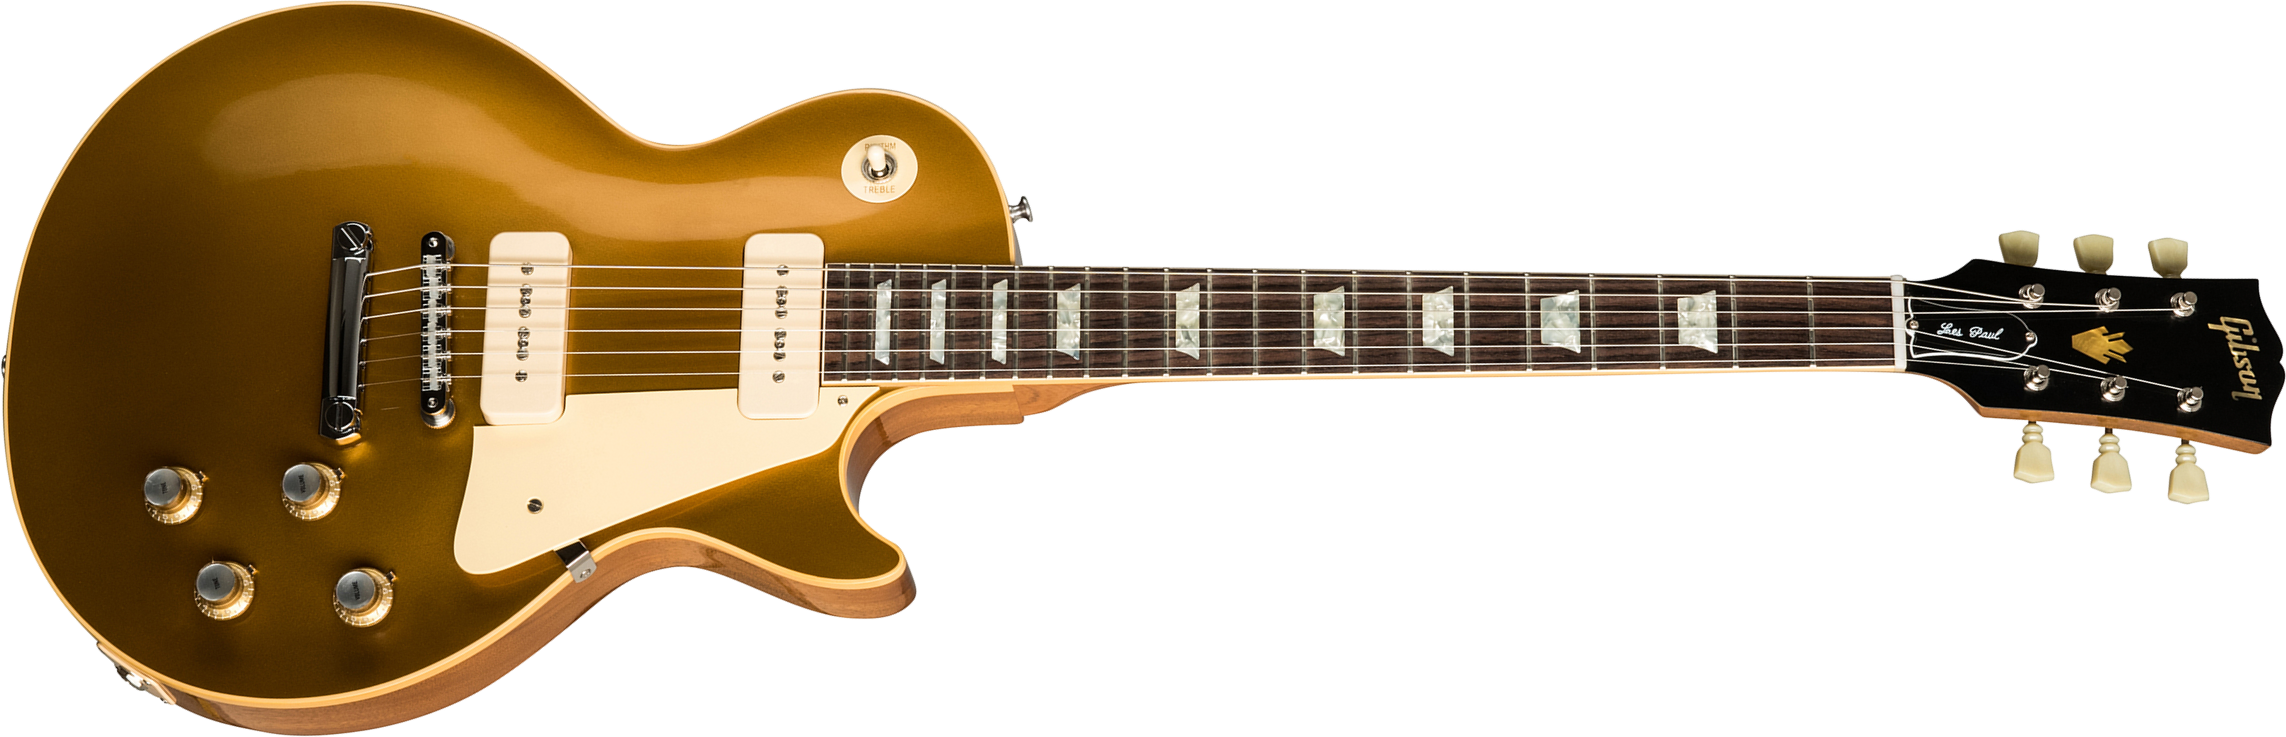 Gibson Custom Shop Les Paul Goldtop 1968 Reissue 2019 2p90 Ht Rw - 60s Gold - Enkel gesneden elektrische gitaar - Main picture